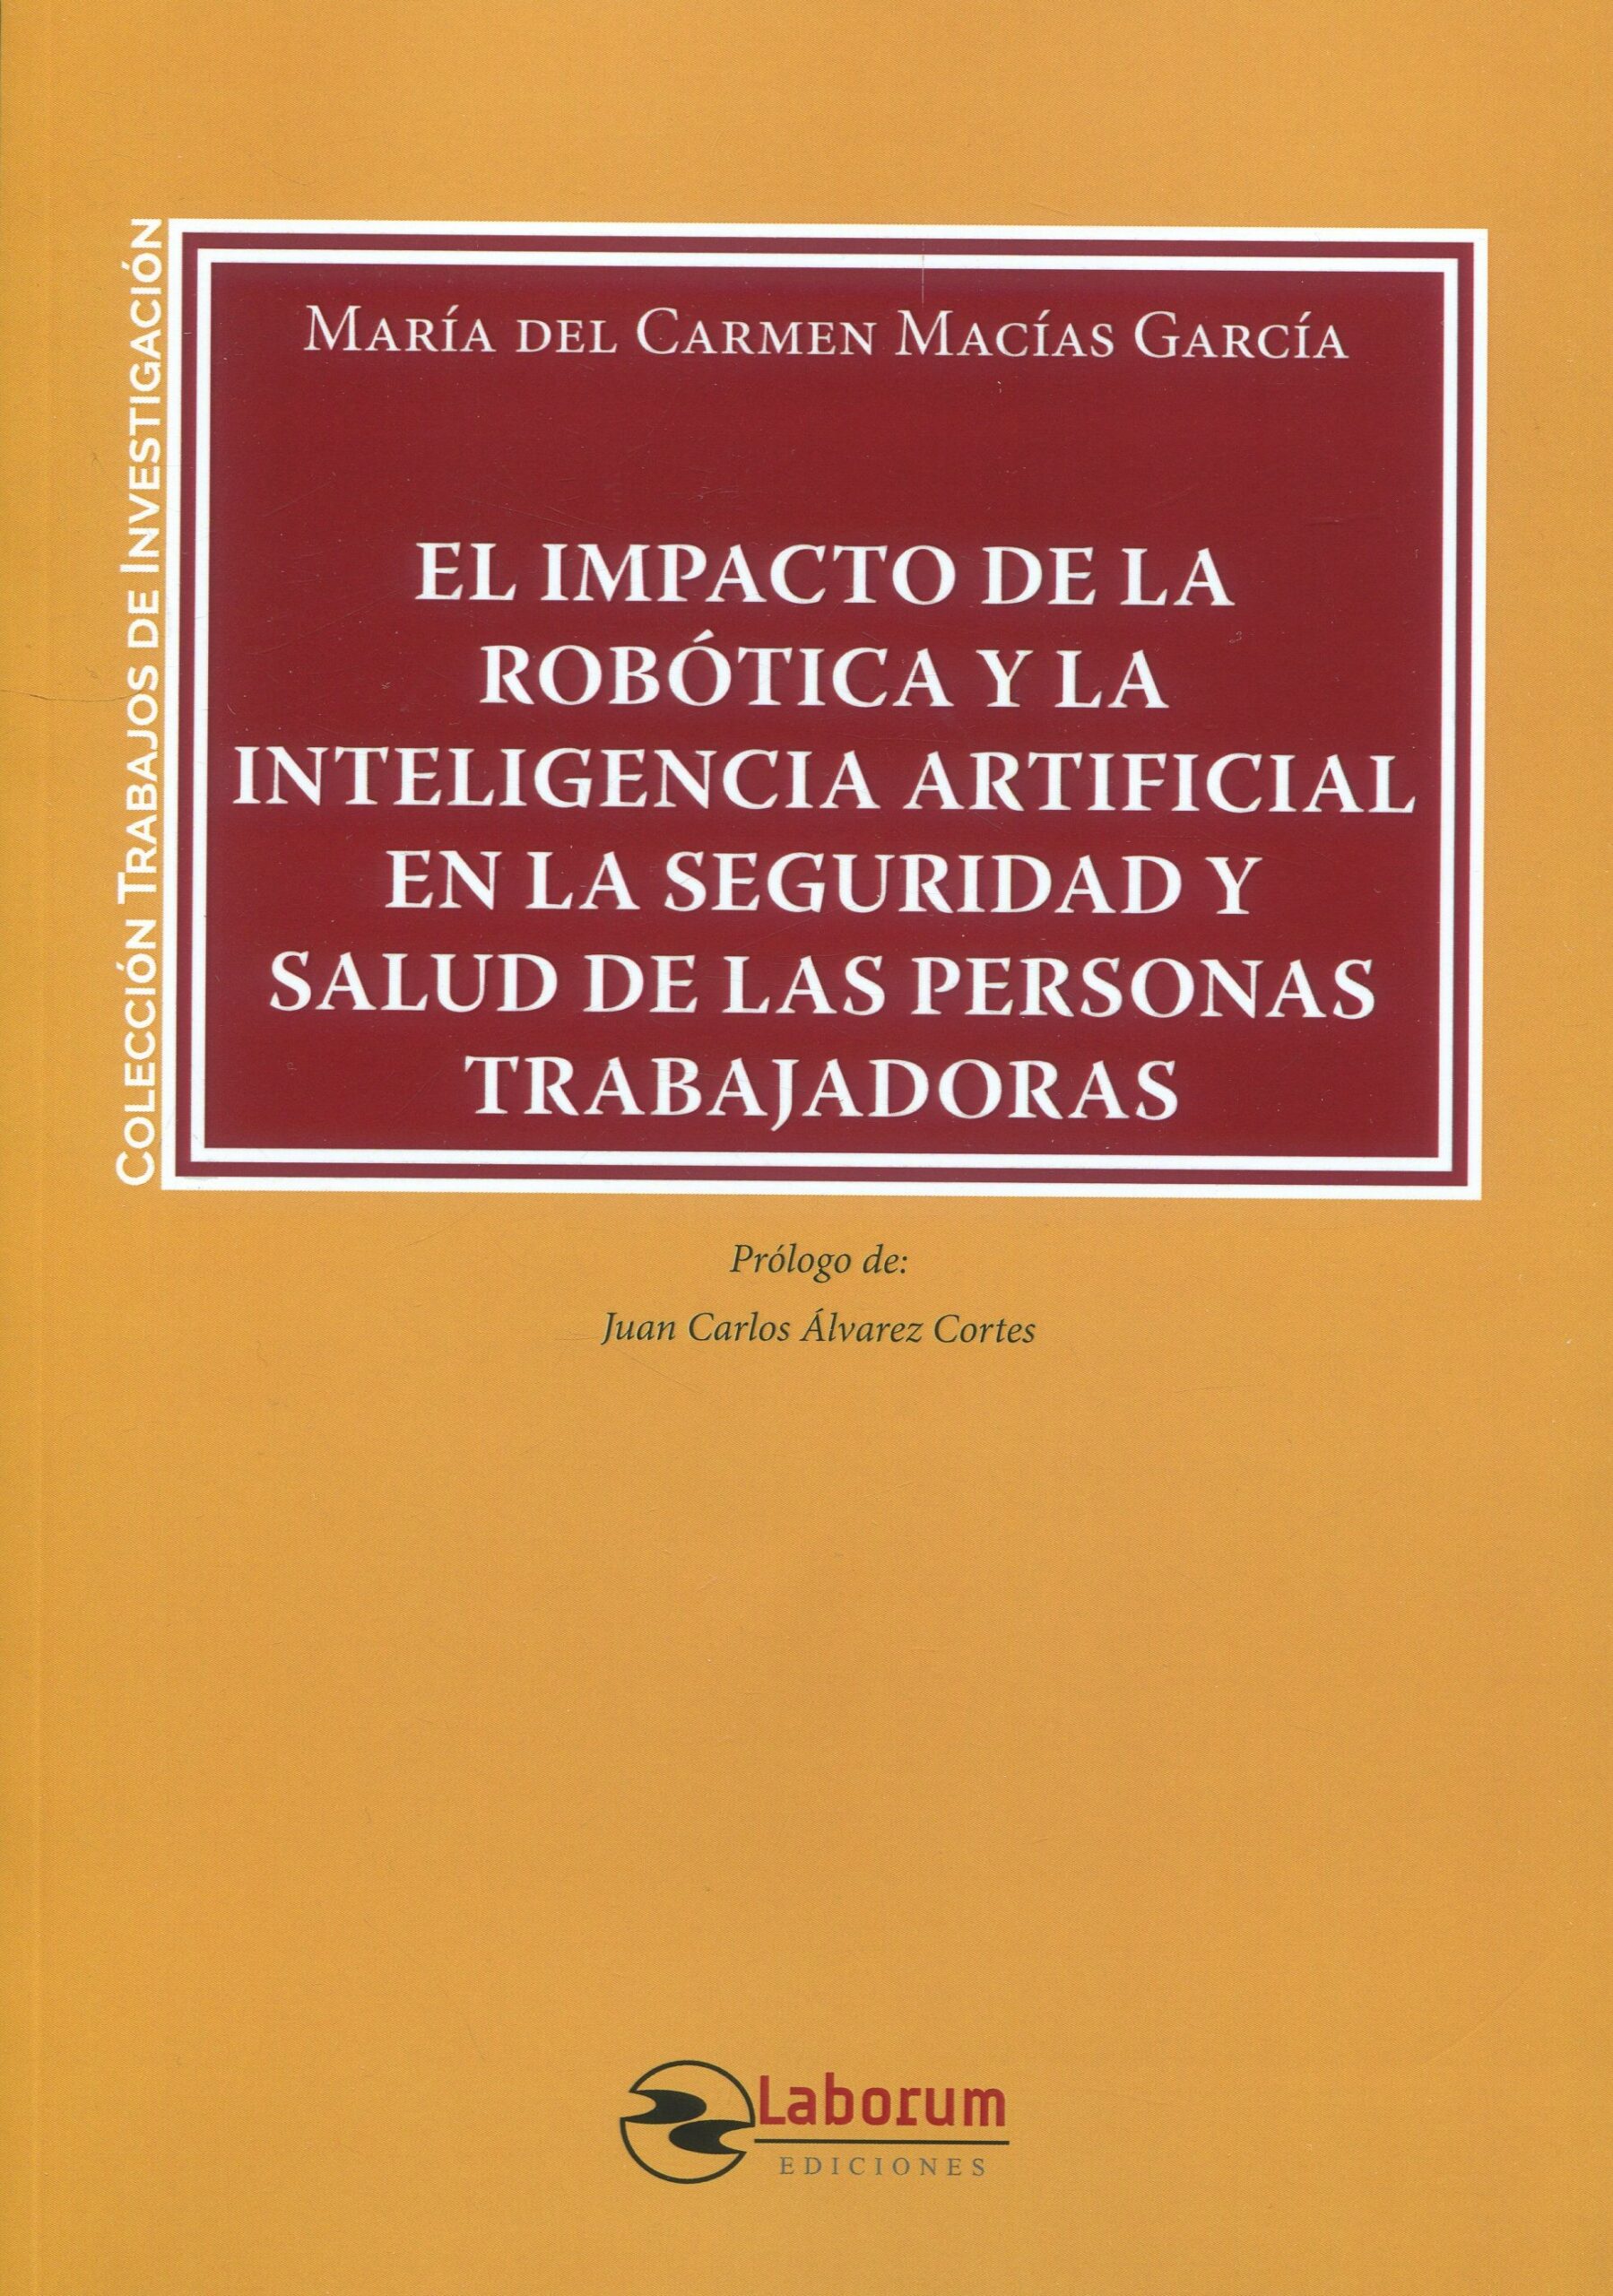 El impacto de la robótica y la Inteligencia Artificial en la Seguridad y Salud de las personas trabajadoras. 9788410262089